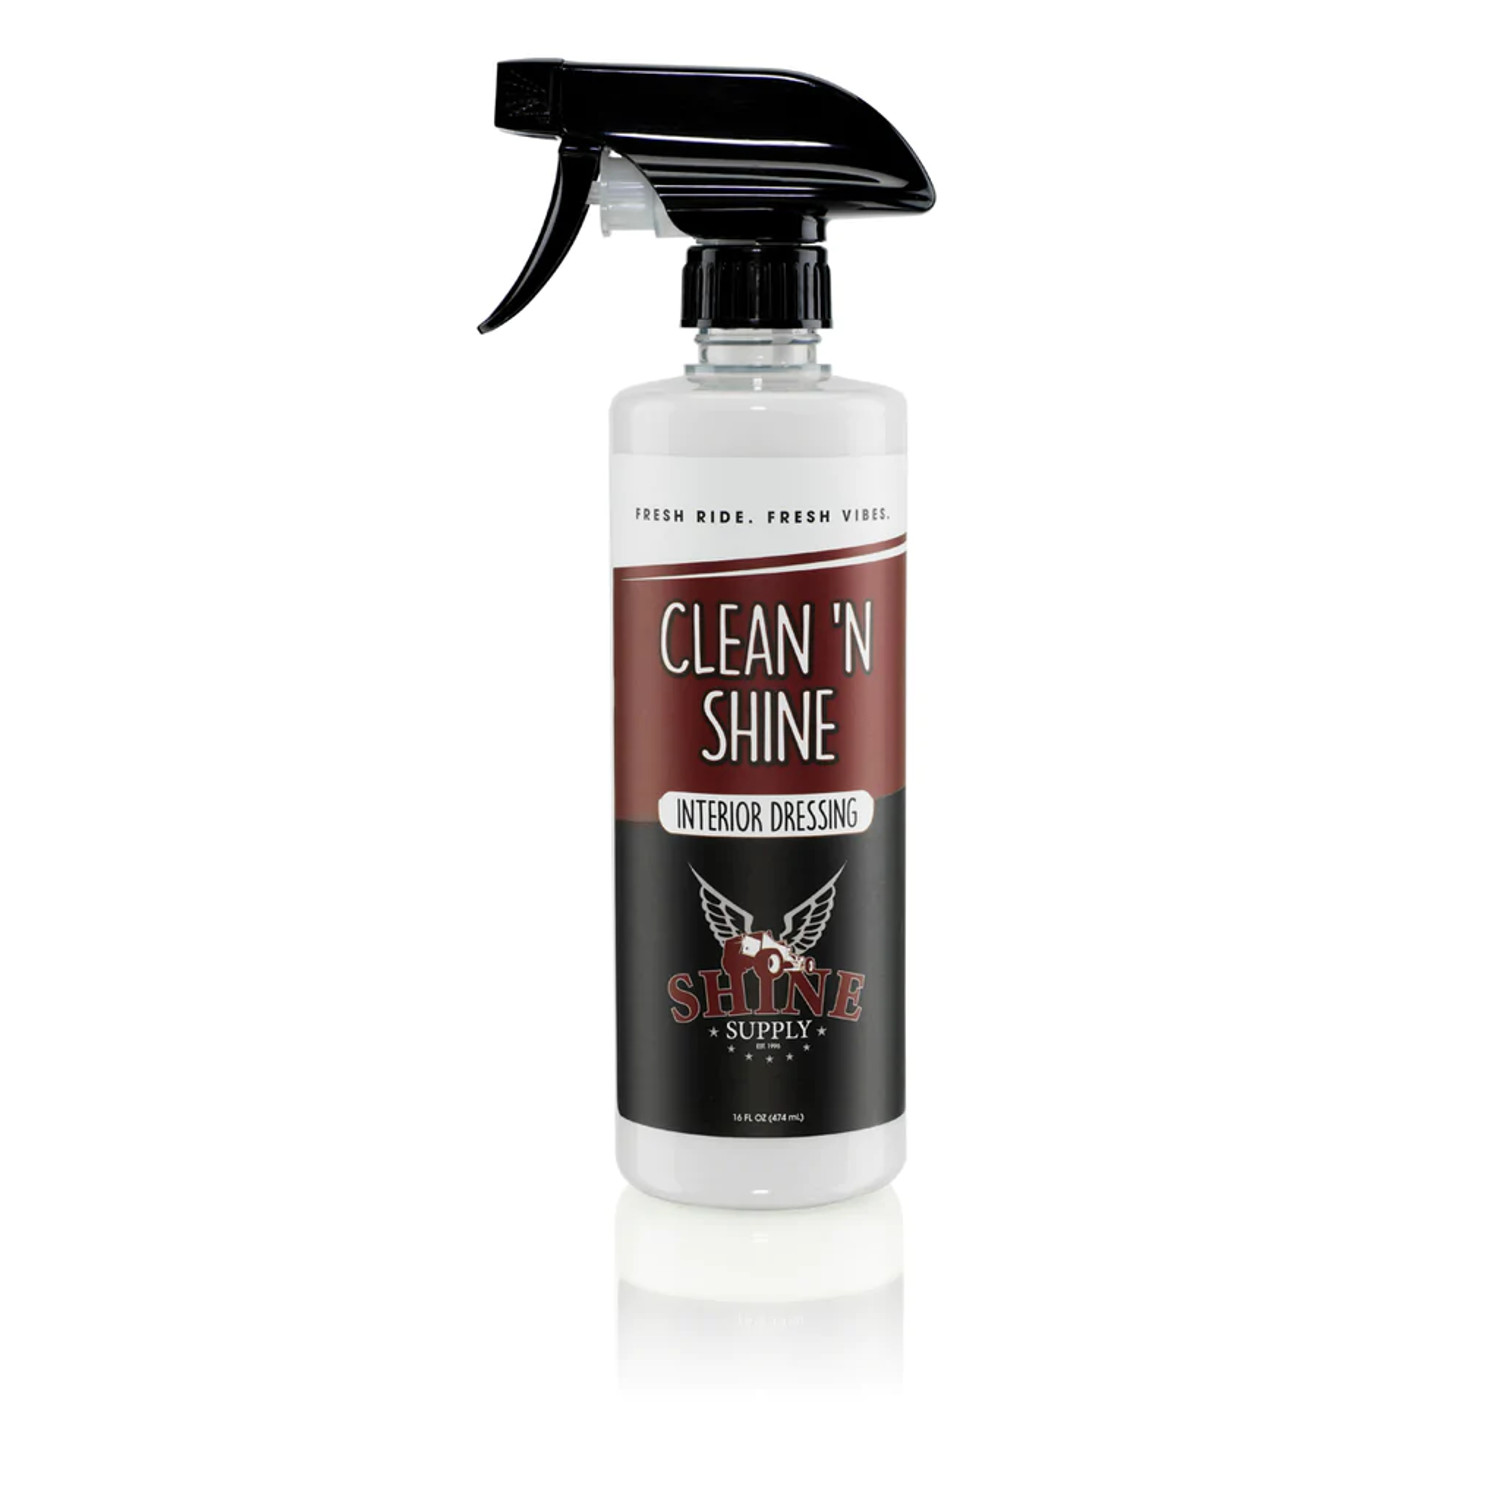 P&S Swift Clean & Shine 1 Gallon